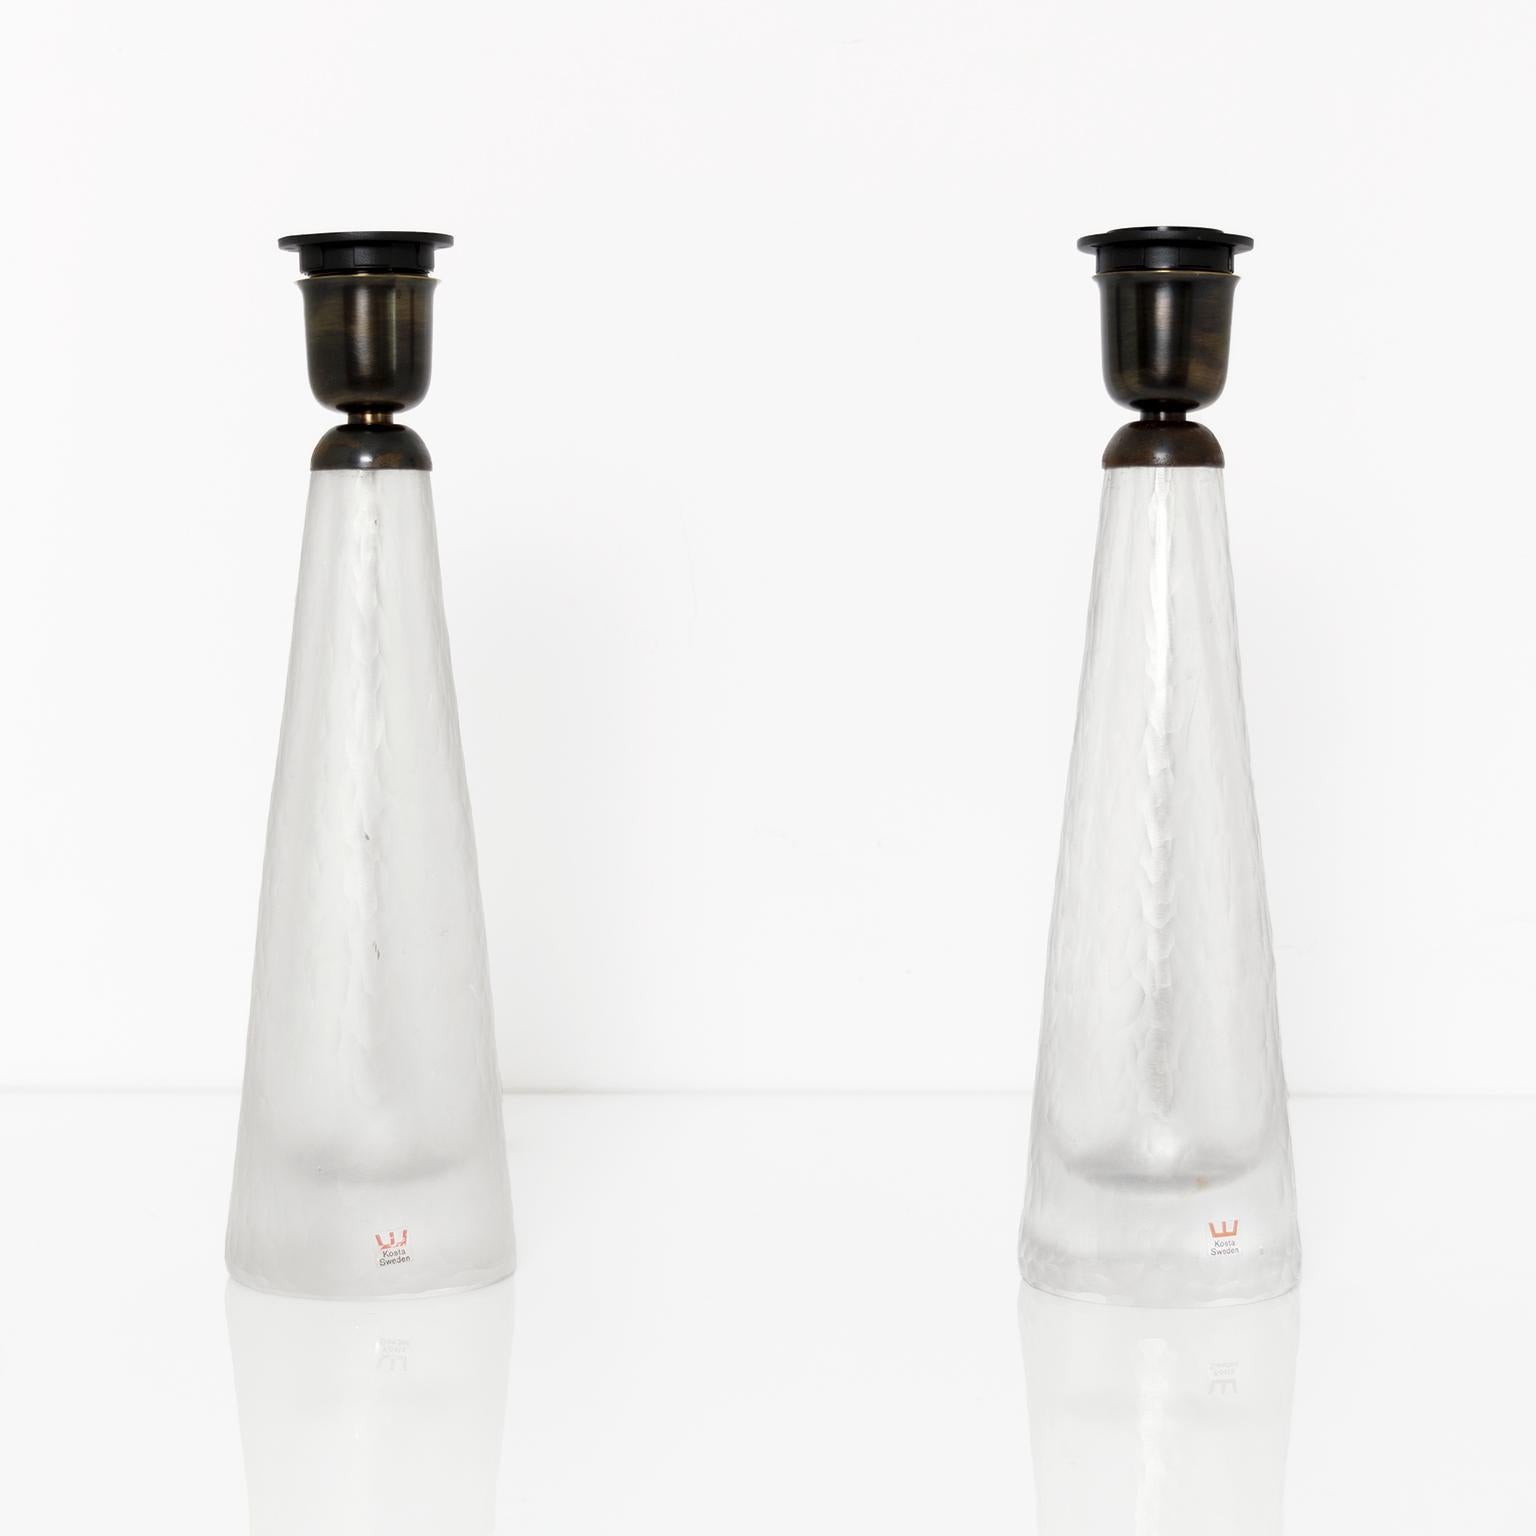 Ein Paar schwedische Glaslampen von Kosta aus der Mitte des Jahrhunderts, 1960er Jahre. Die Lampenkörper haben eine gemeißelte, säuregeätzte Oberfläche. Die Beschläge sind aus patiniertem Messing und für den Gebrauch in den USA mit je einer